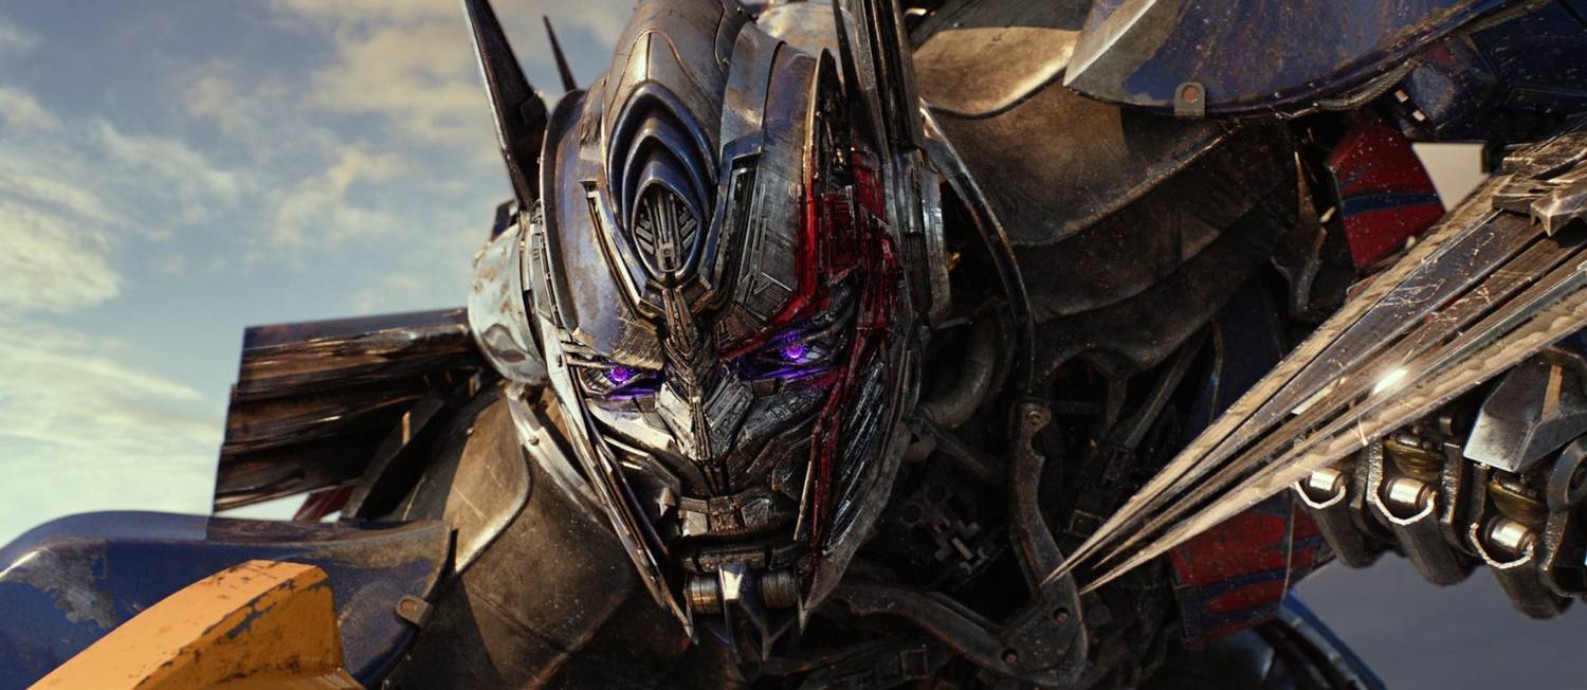 Transformers: O Último Cavaleiro' continua no topo das bilheterias